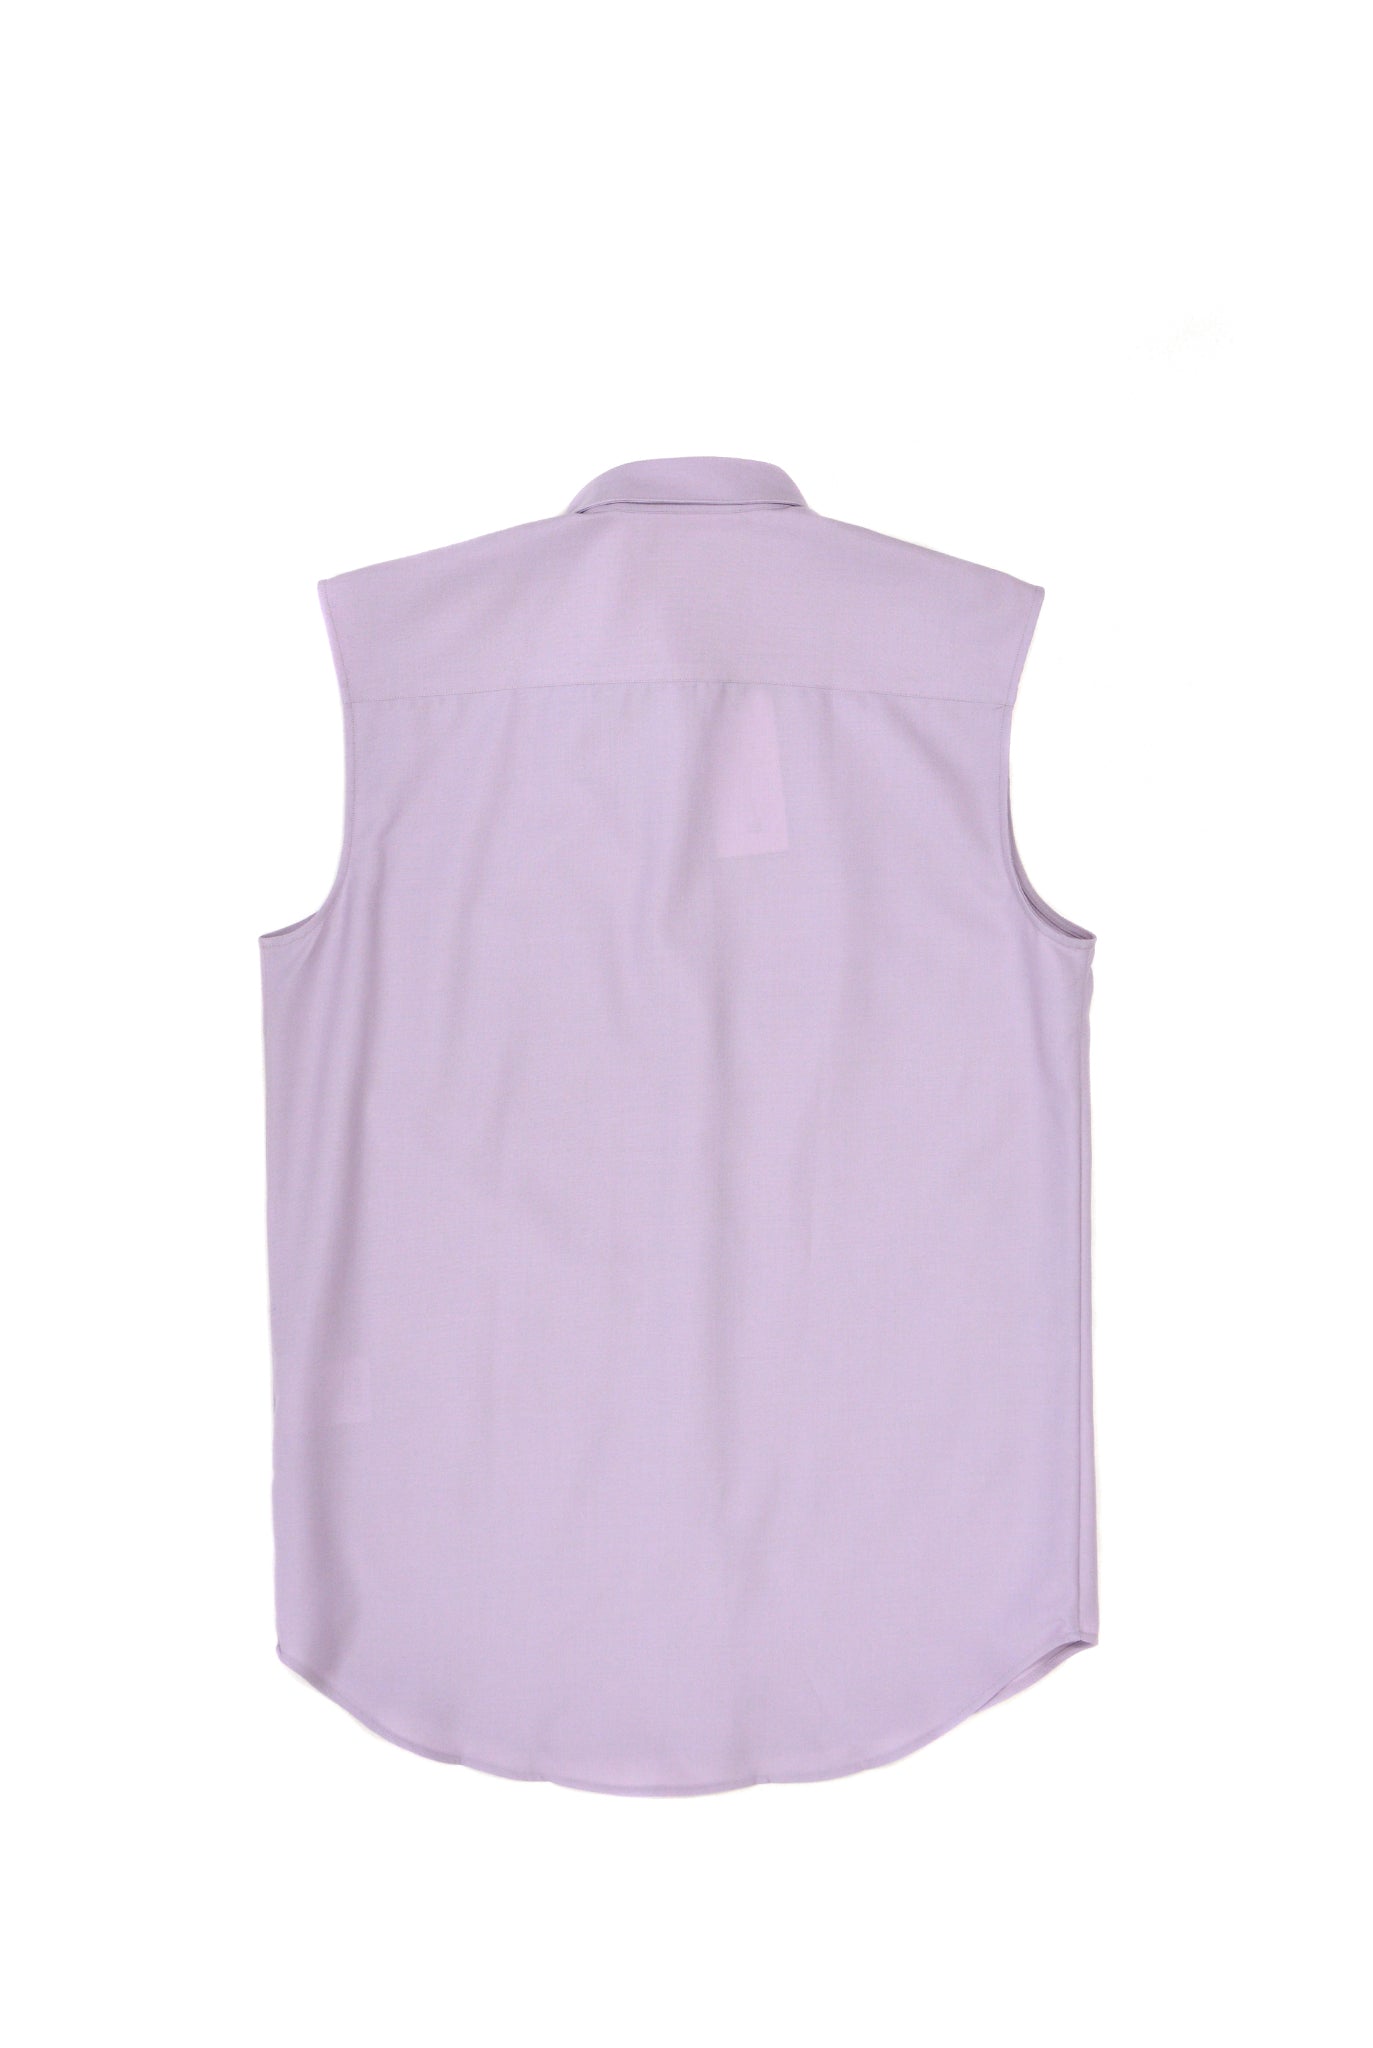 Ernest W. Baker Sleeveless Shirt, Lilac